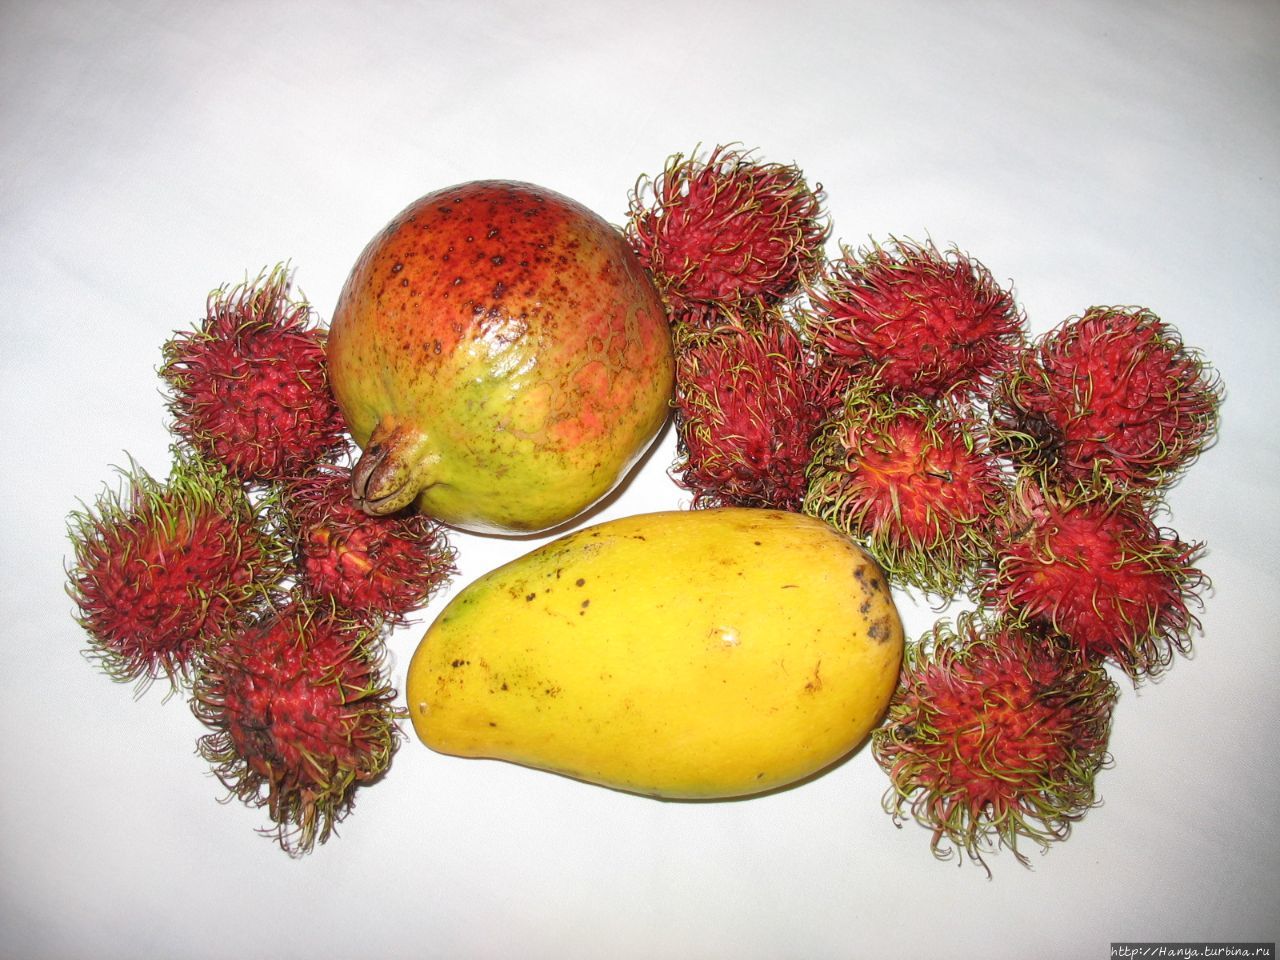 Камбоджийские фрукты Пномпень, Камбоджа